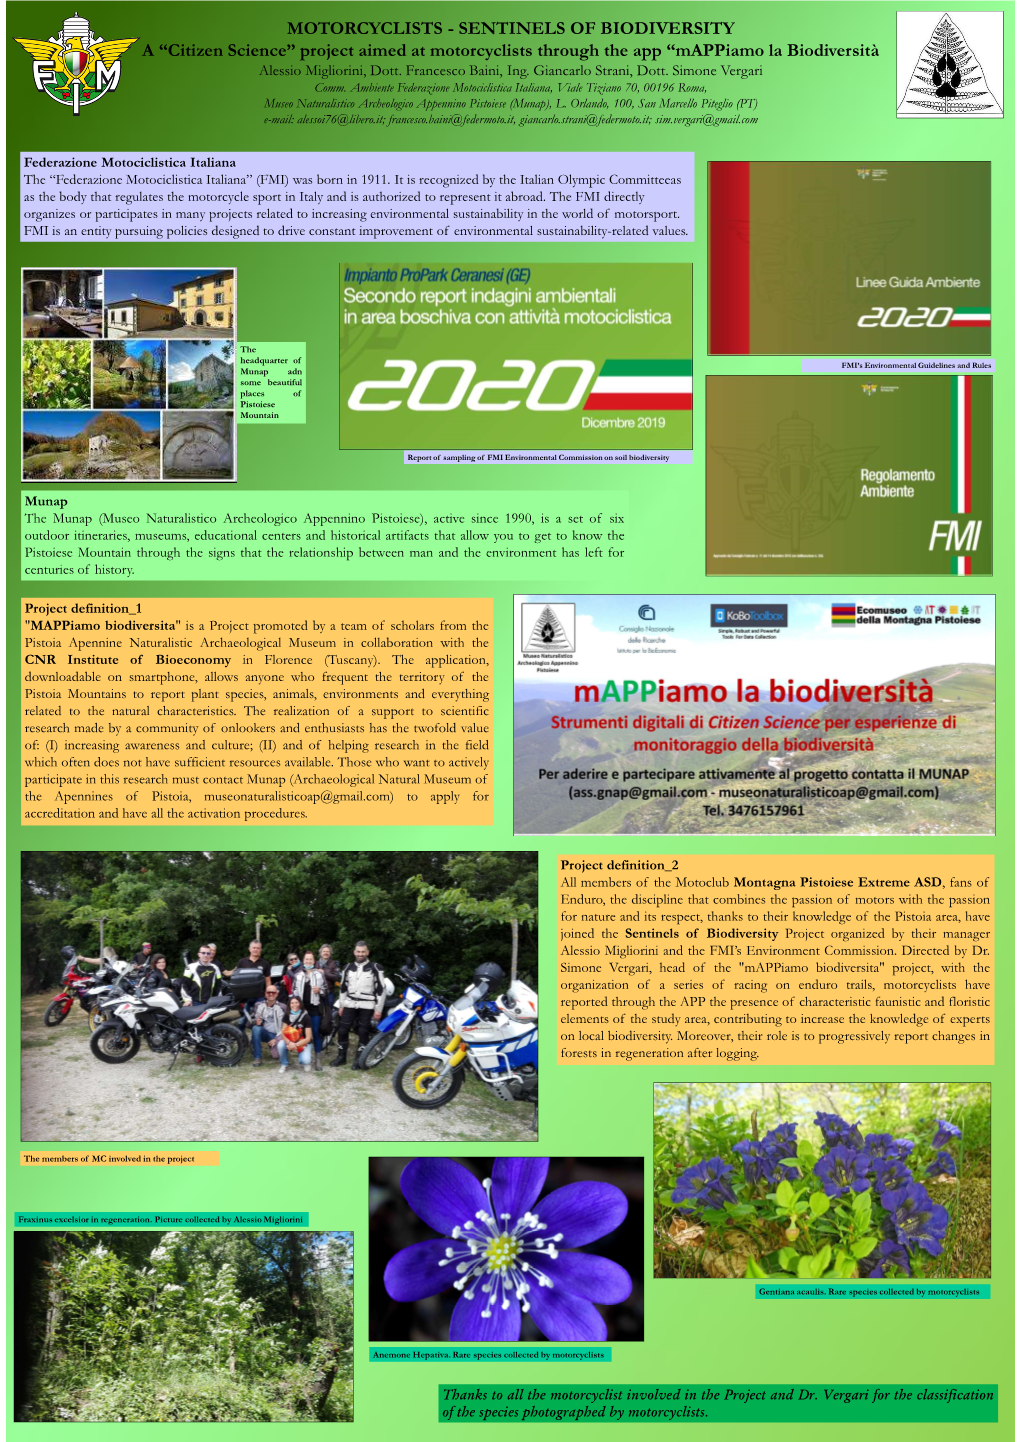 MOTORCYCLISTS - SENTINELS of BIODIVERSITY a “Citizen Science” Project Aimed at Motorcyclists Through the App “Mappiamo La Biodiversità Alessio Migliorini, Dott